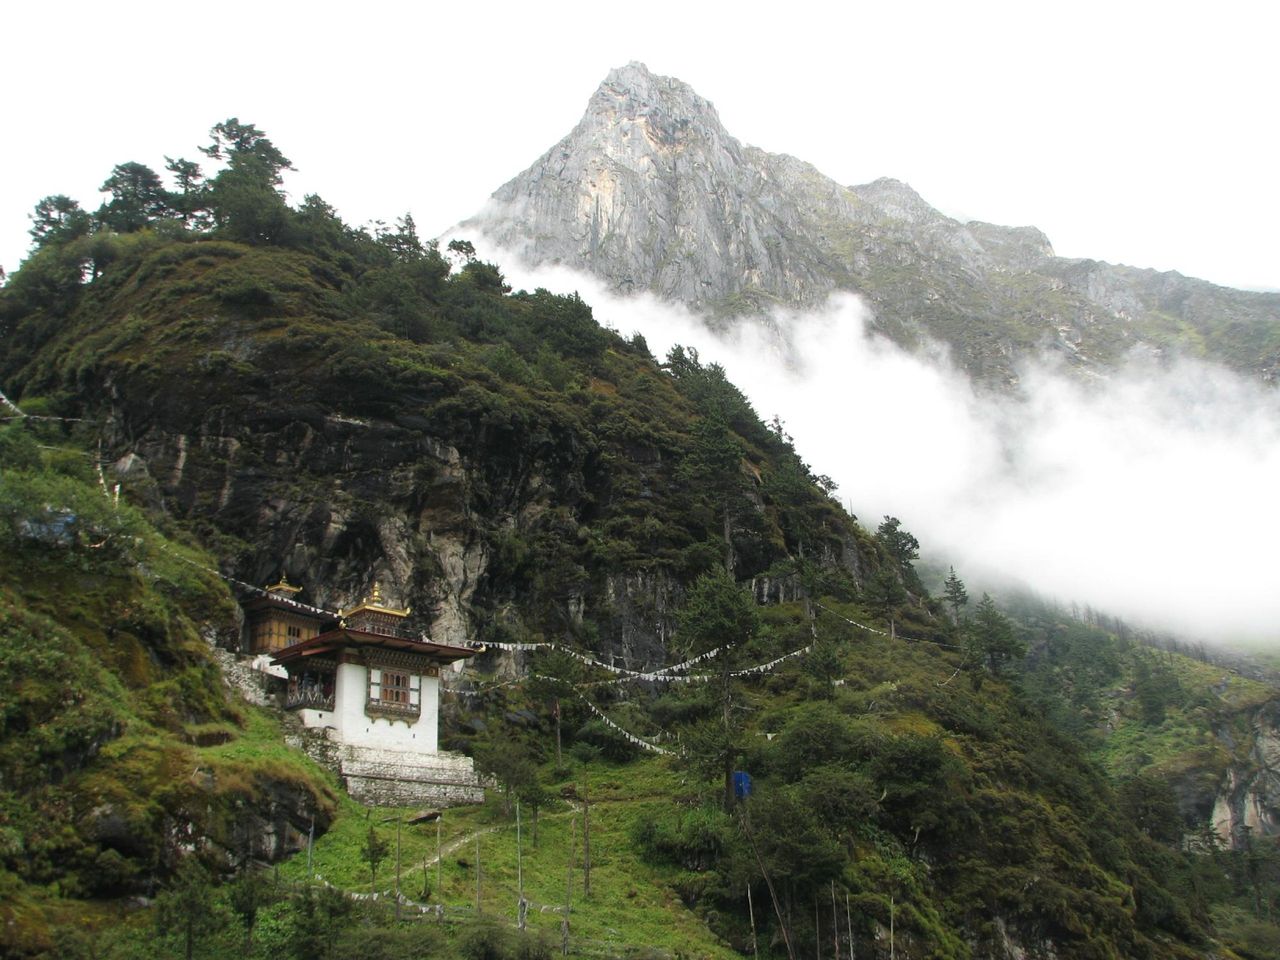 Découvrez les Joyaux Cachés de Mongar : Les Secrets les Mieux Gardés du Bhoutan.